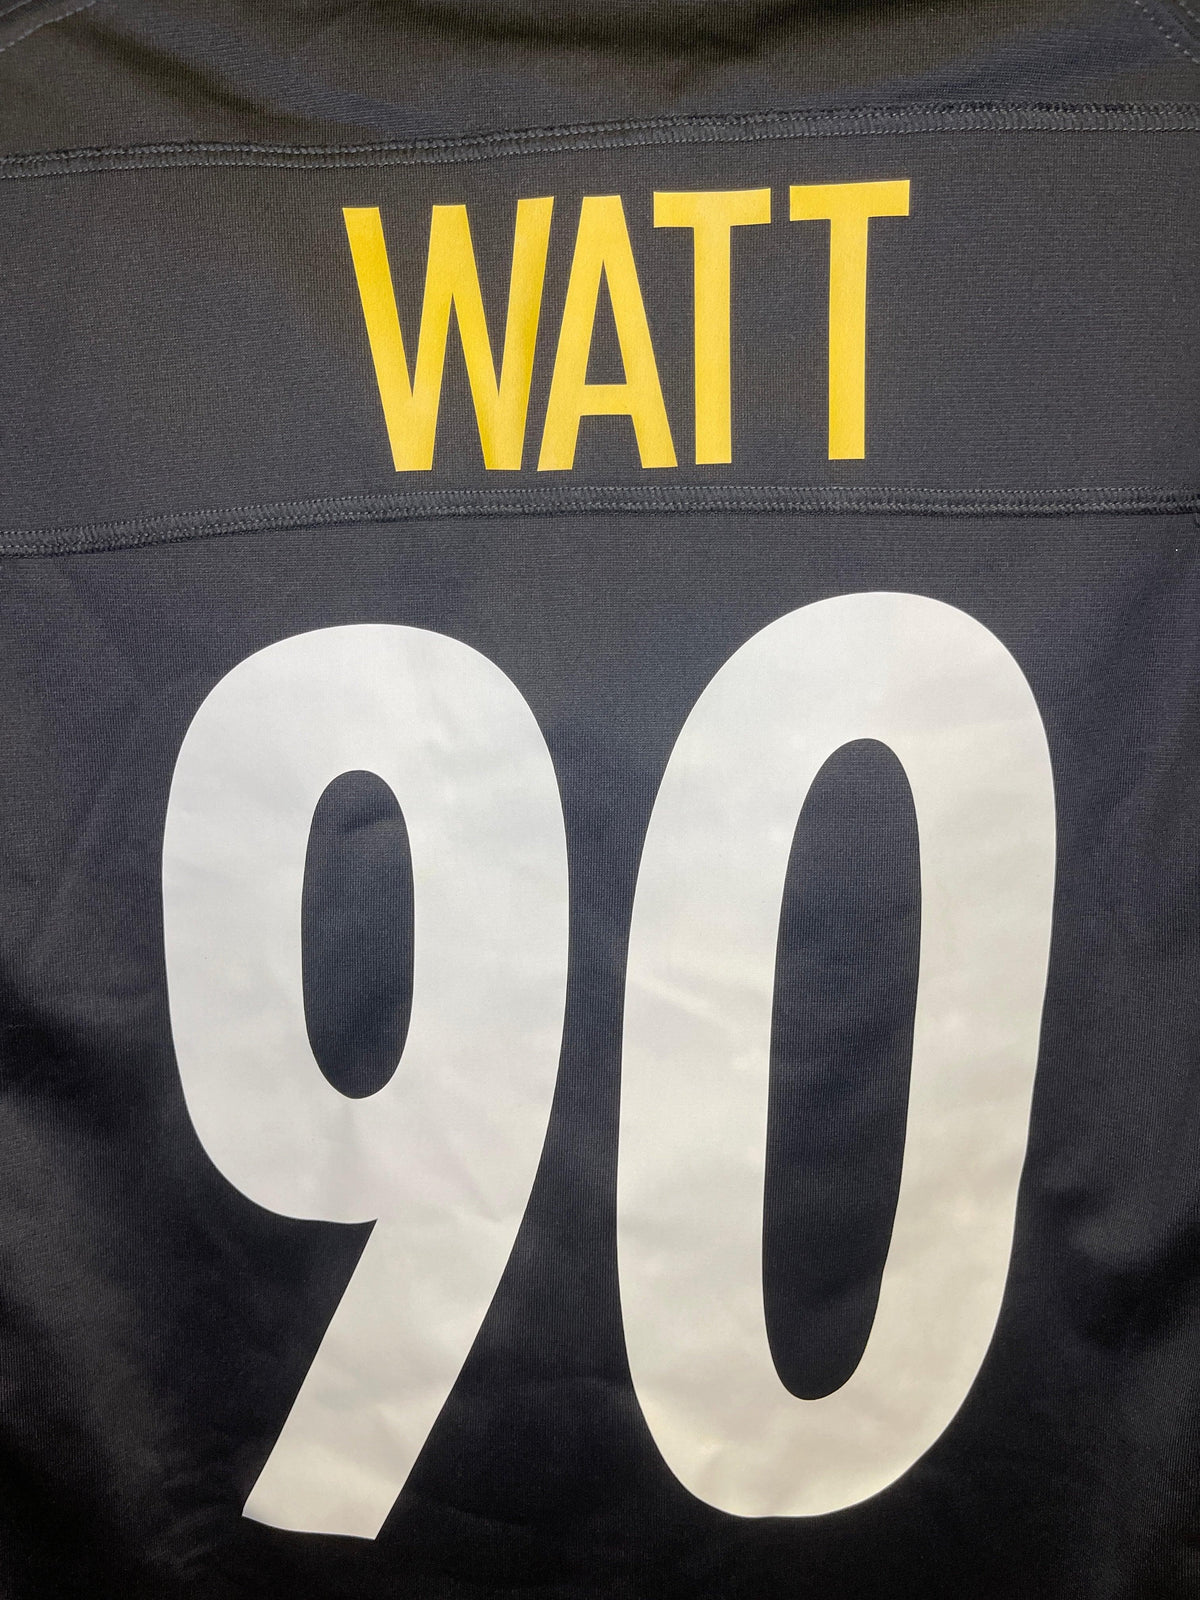 NFL Pittsburgh Steelers TJ Watt #90 Game Jersey Men's Large NWOT